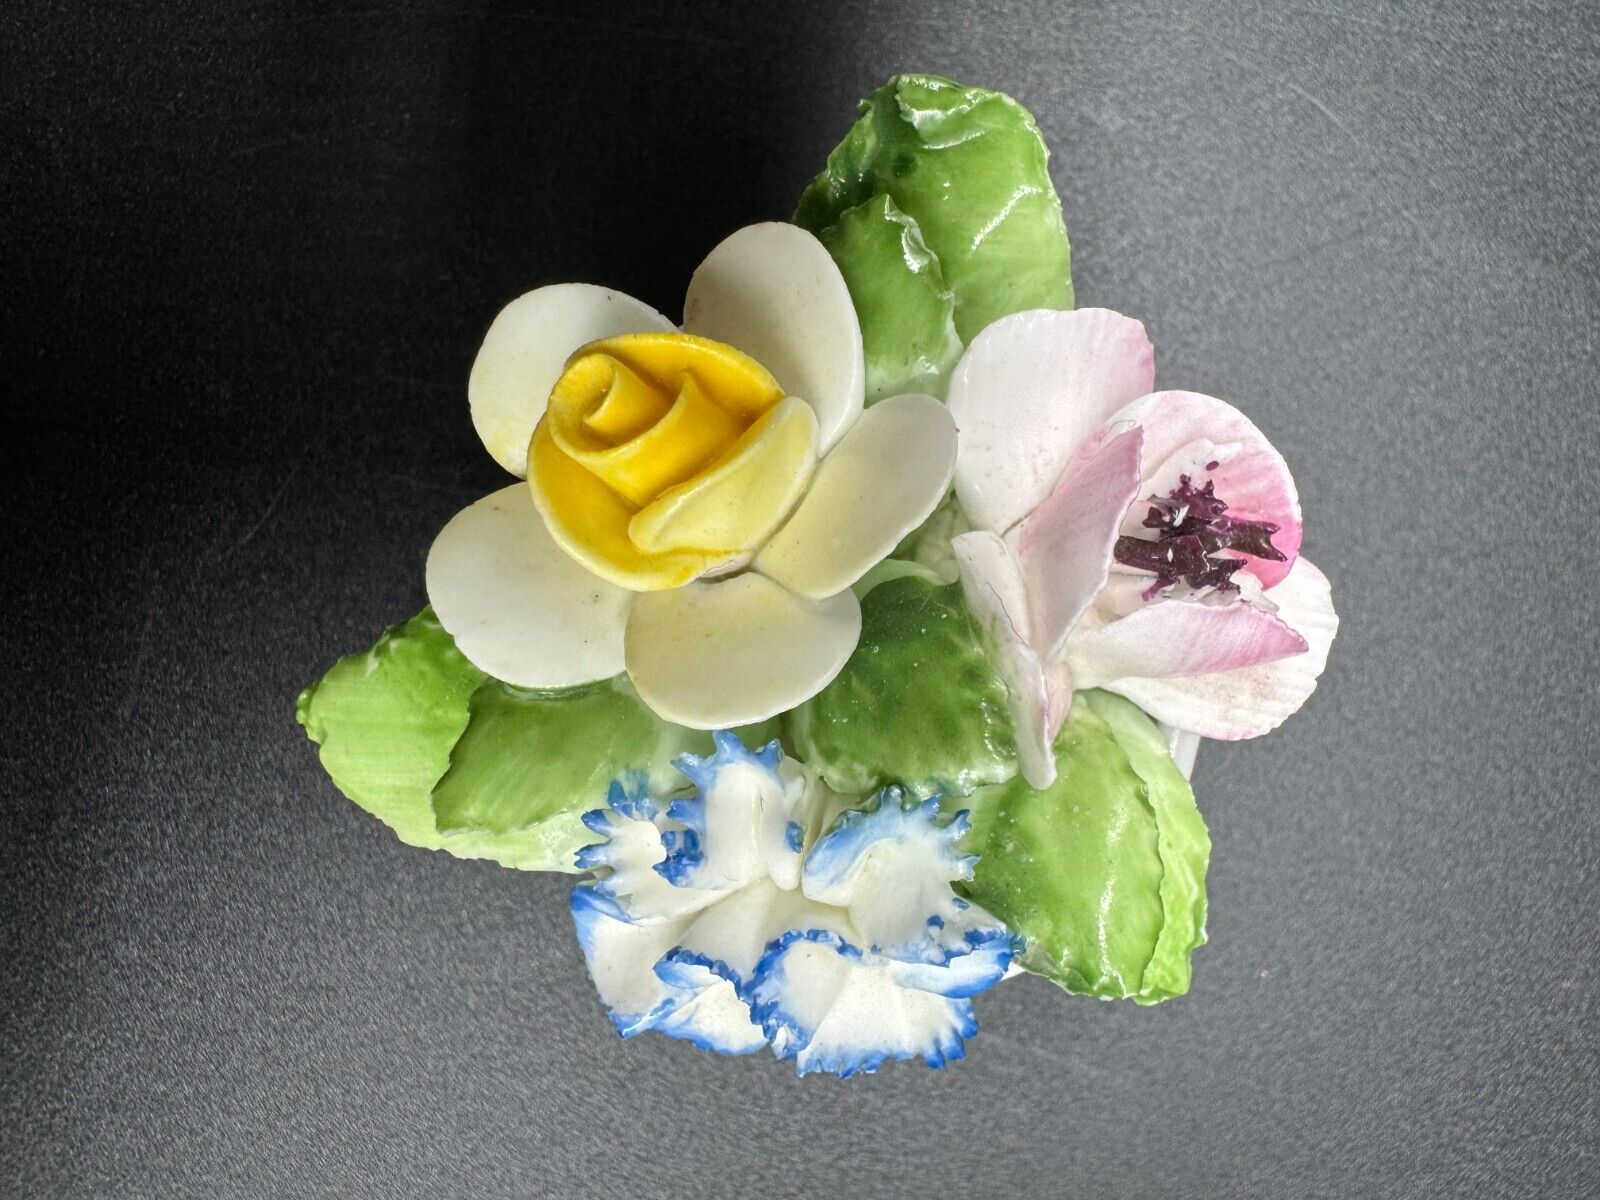 Vintage Royal Doulton Bone China Porcelain Flower Bouquet Basket Made In England